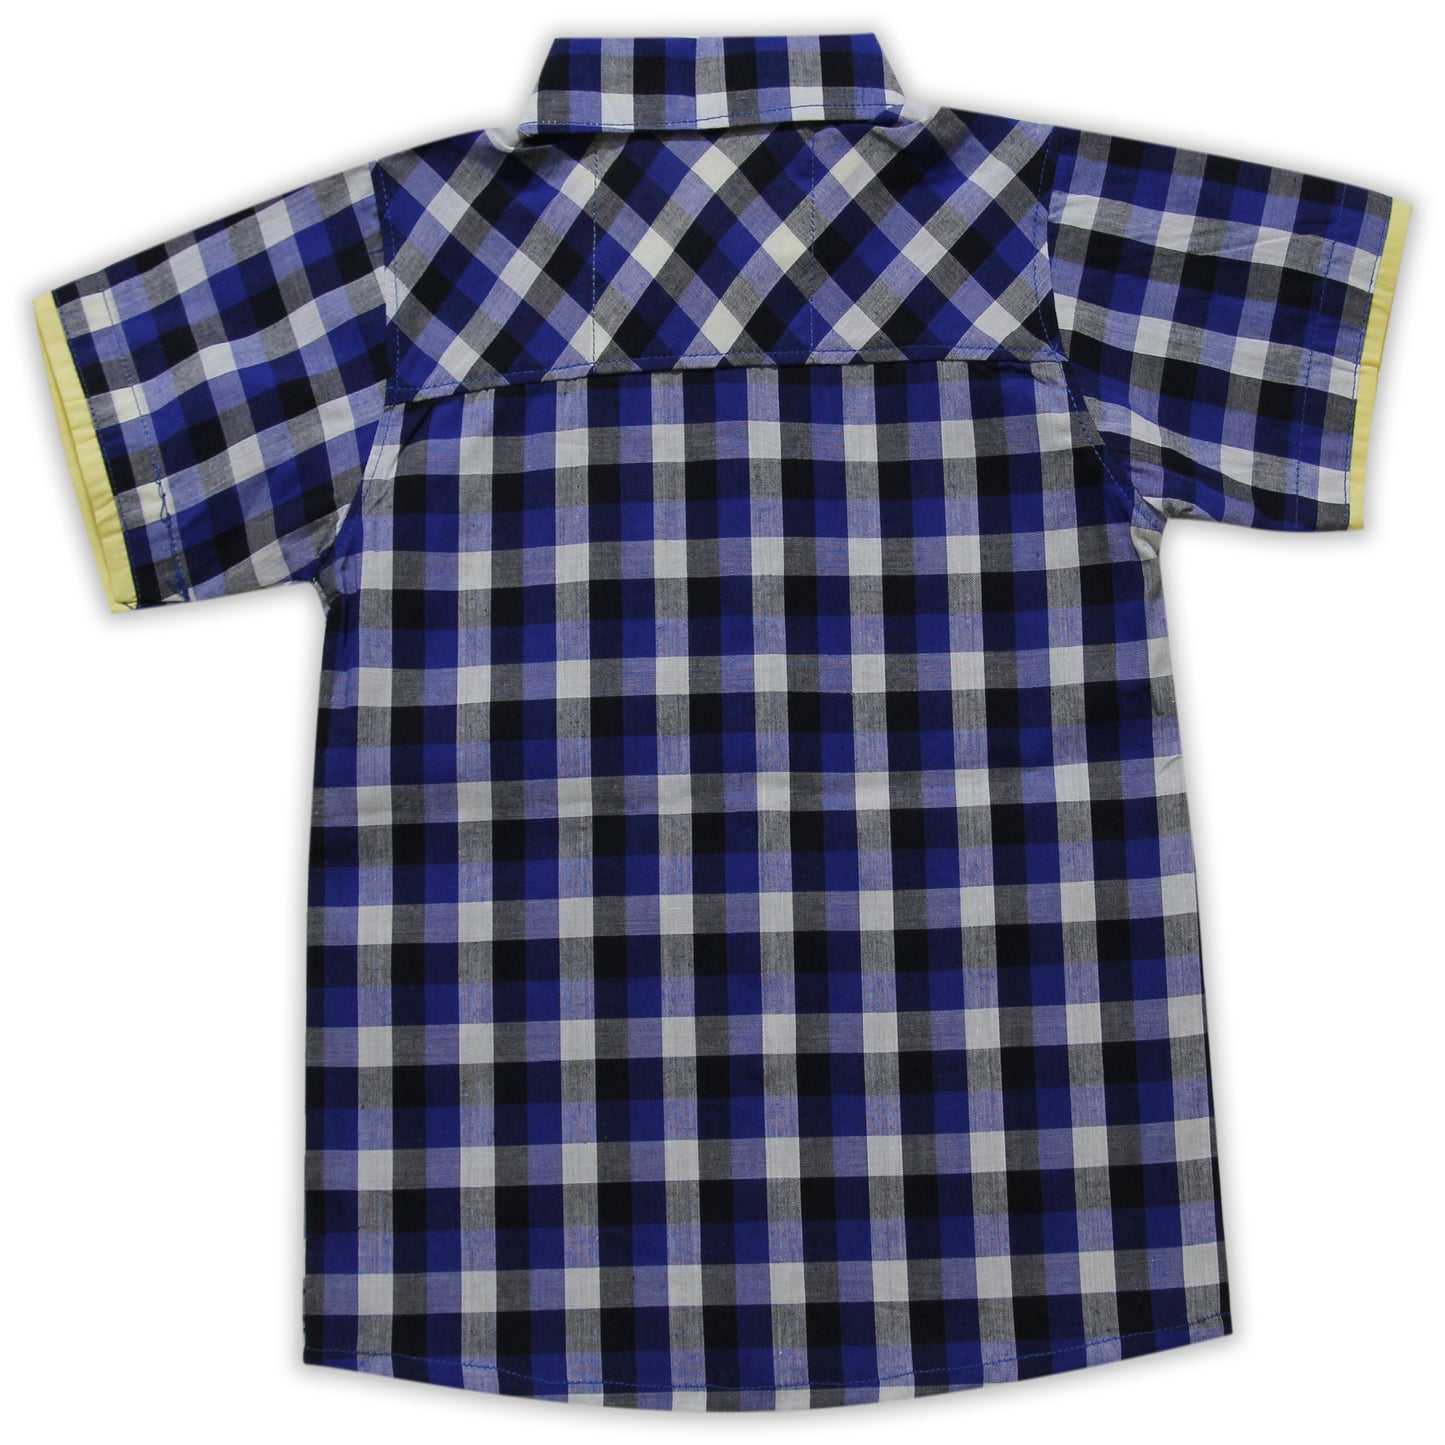 Kids Checkered Shirt